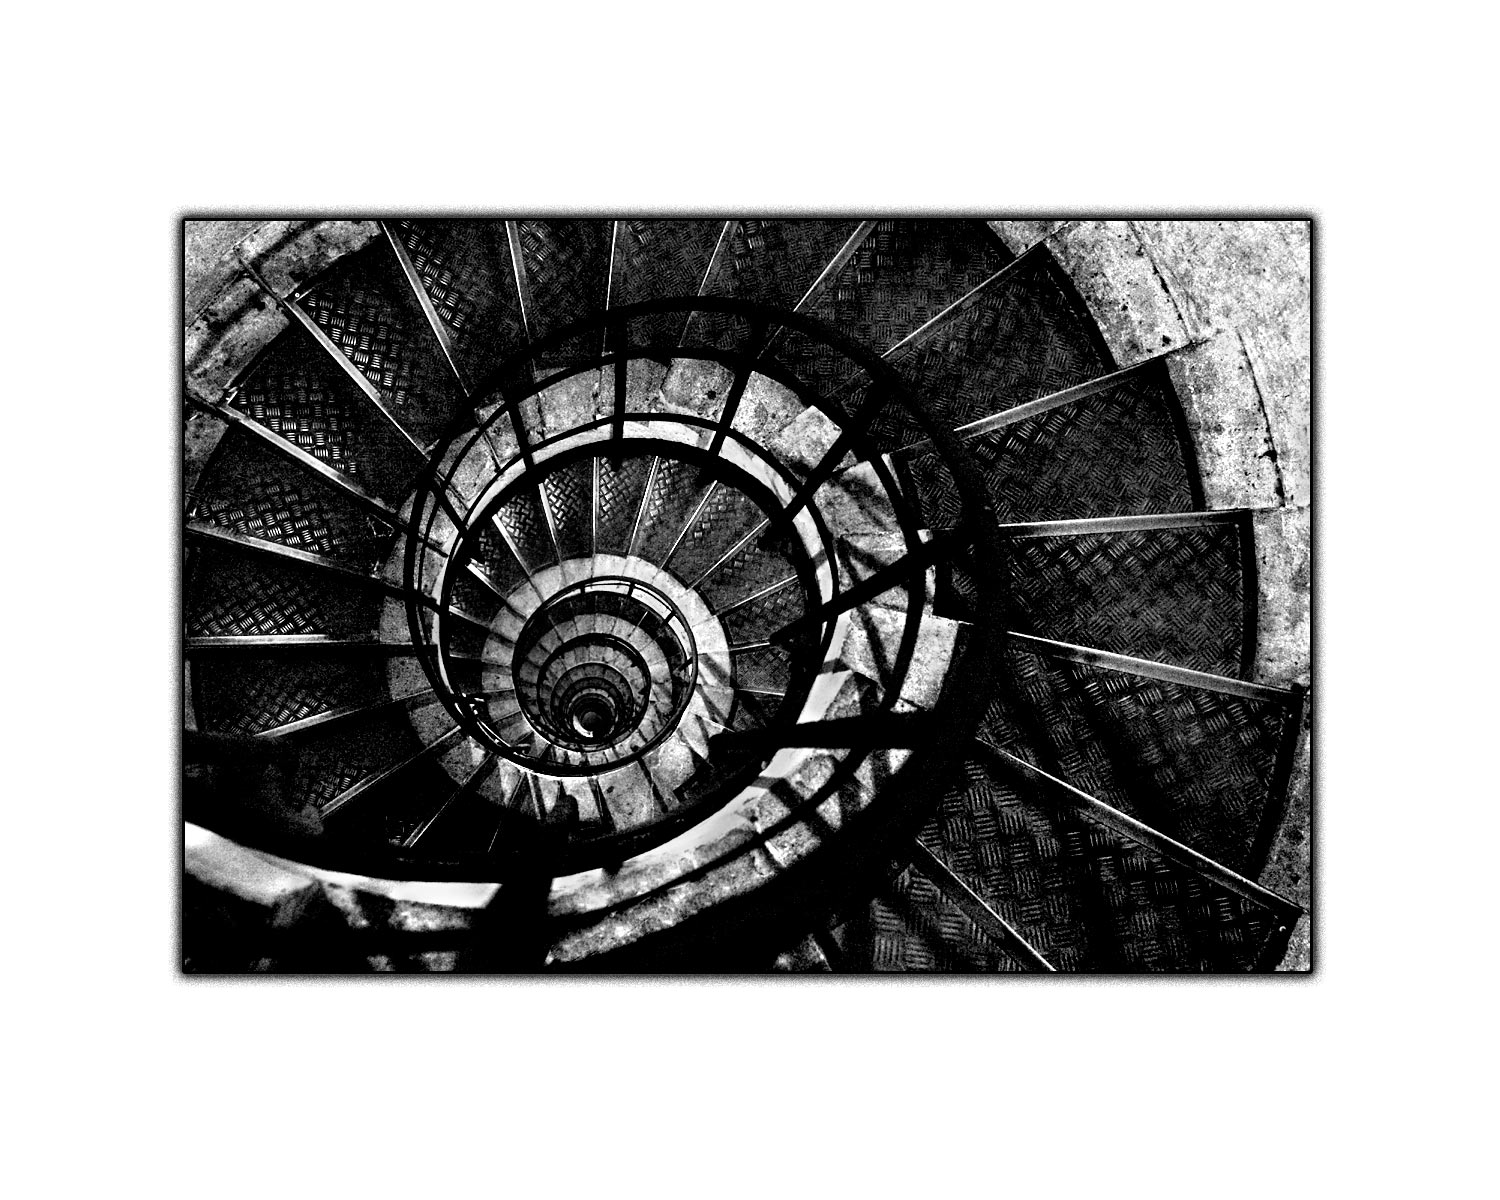 [Staircase-Arc-de-Triomphe.jpg]